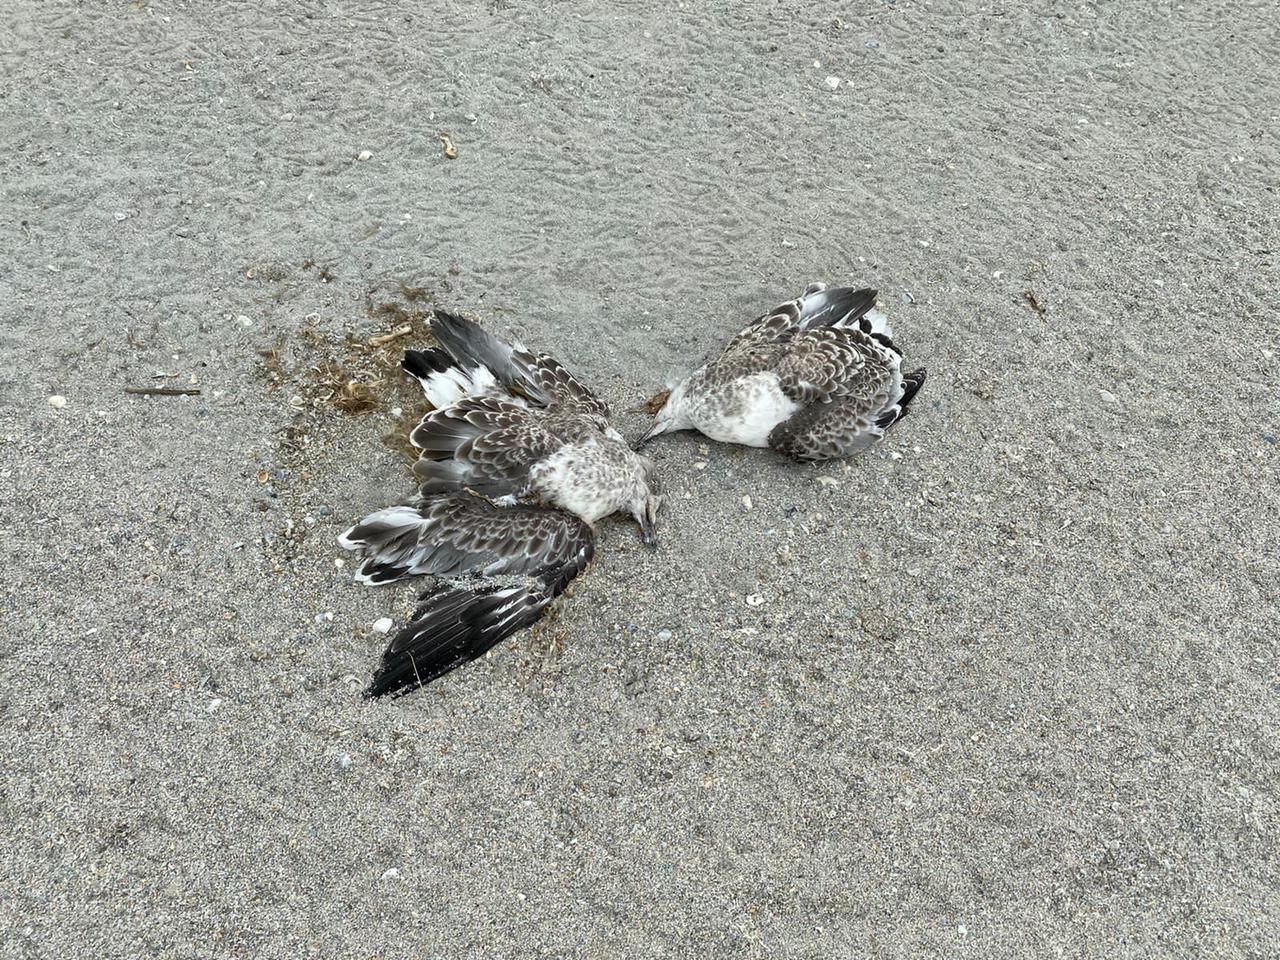 Причины гибели птиц выясняются